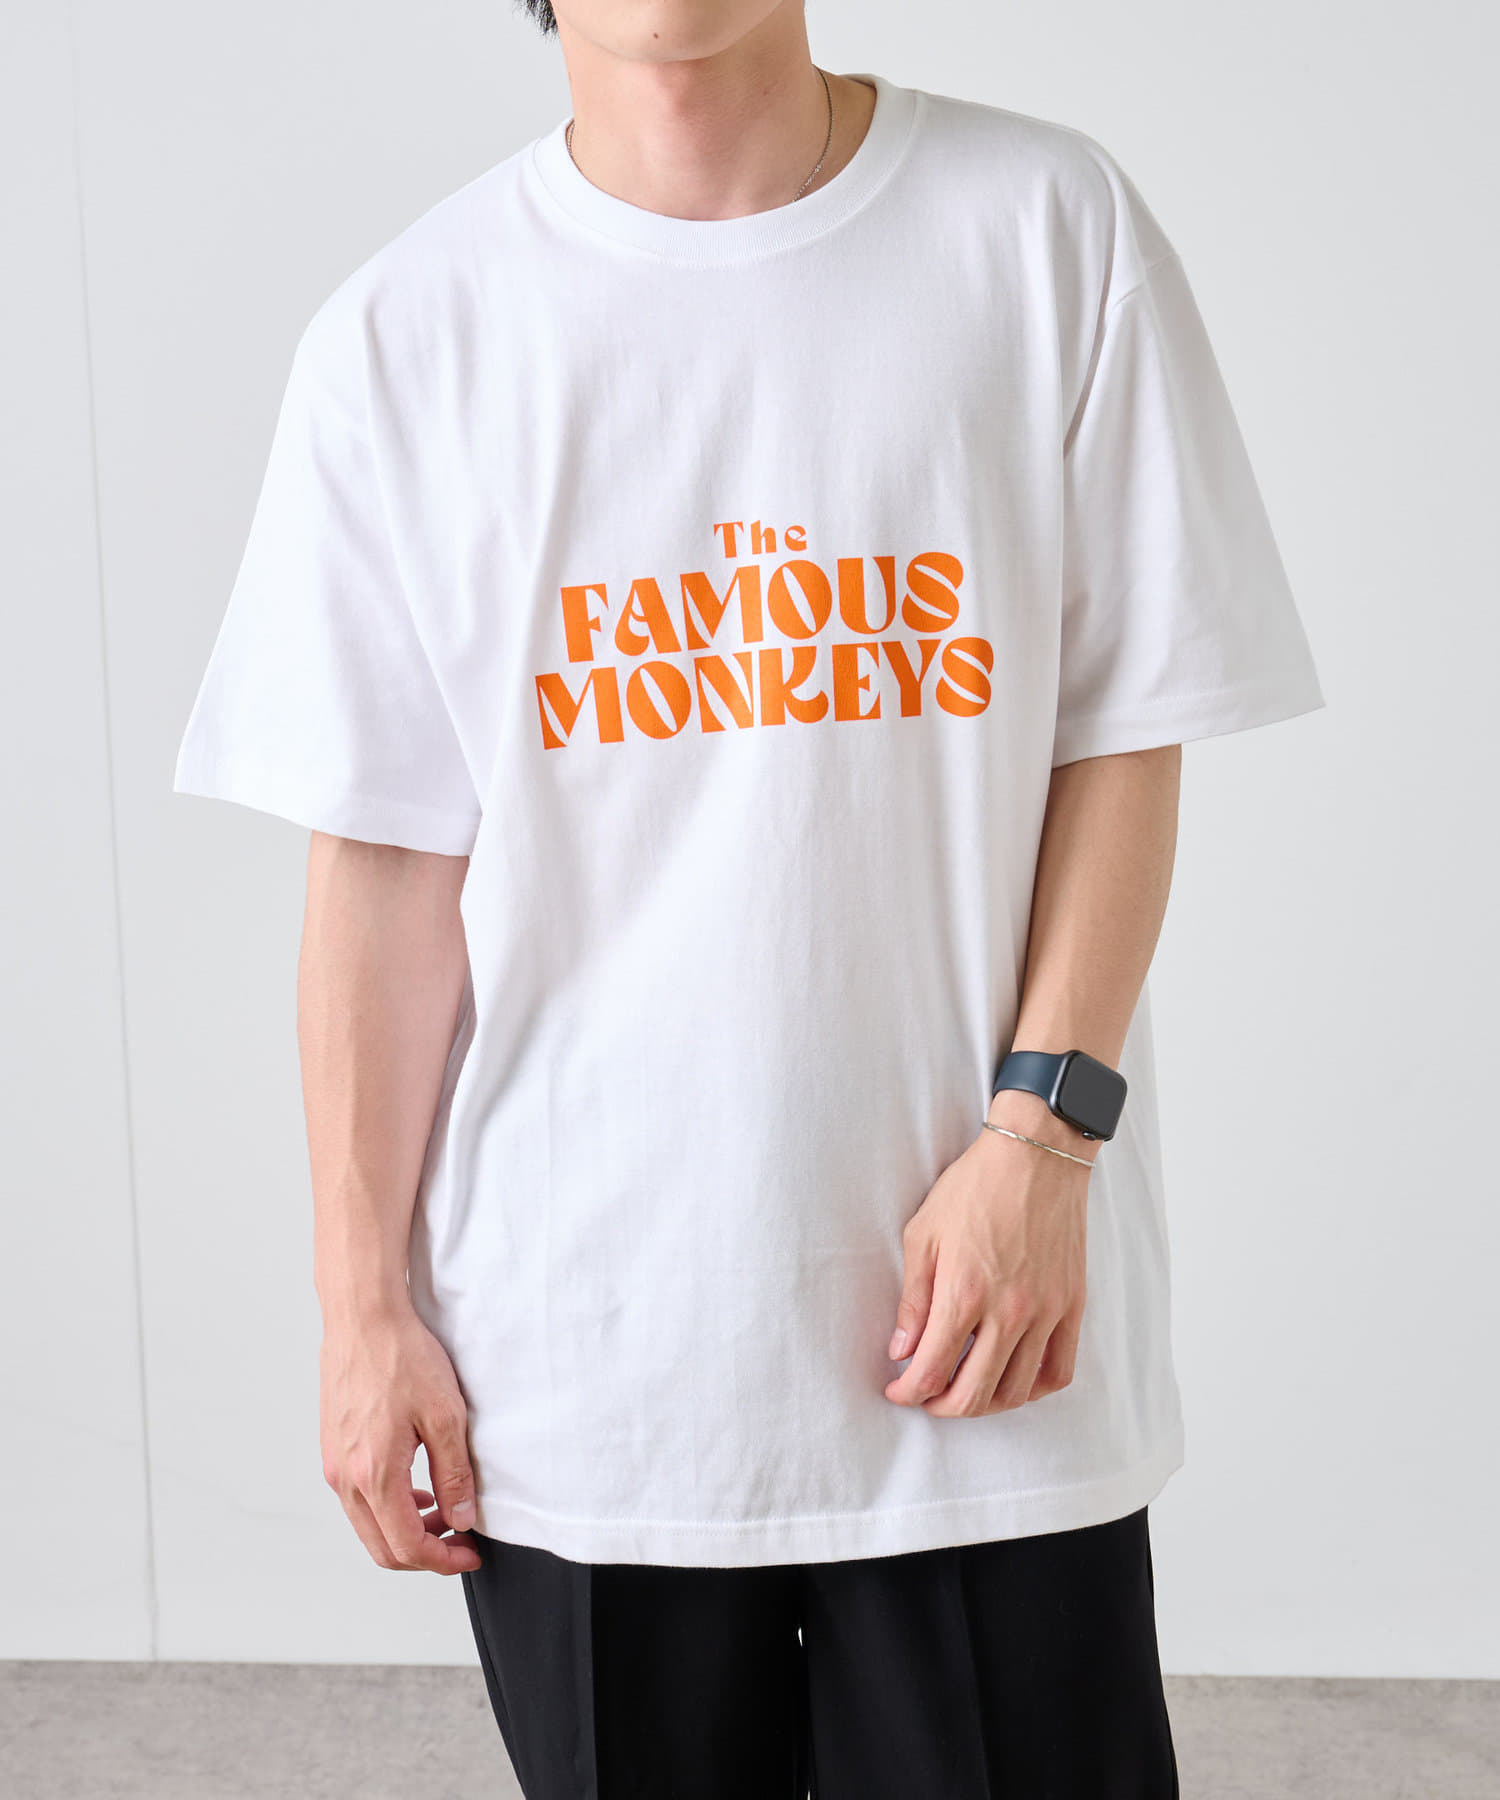 COLONY 2139(コロニー トゥーワンスリーナイン) レディース メッセージロゴTシャツ/ FamousMonkeys / ユニセックス ホワイト